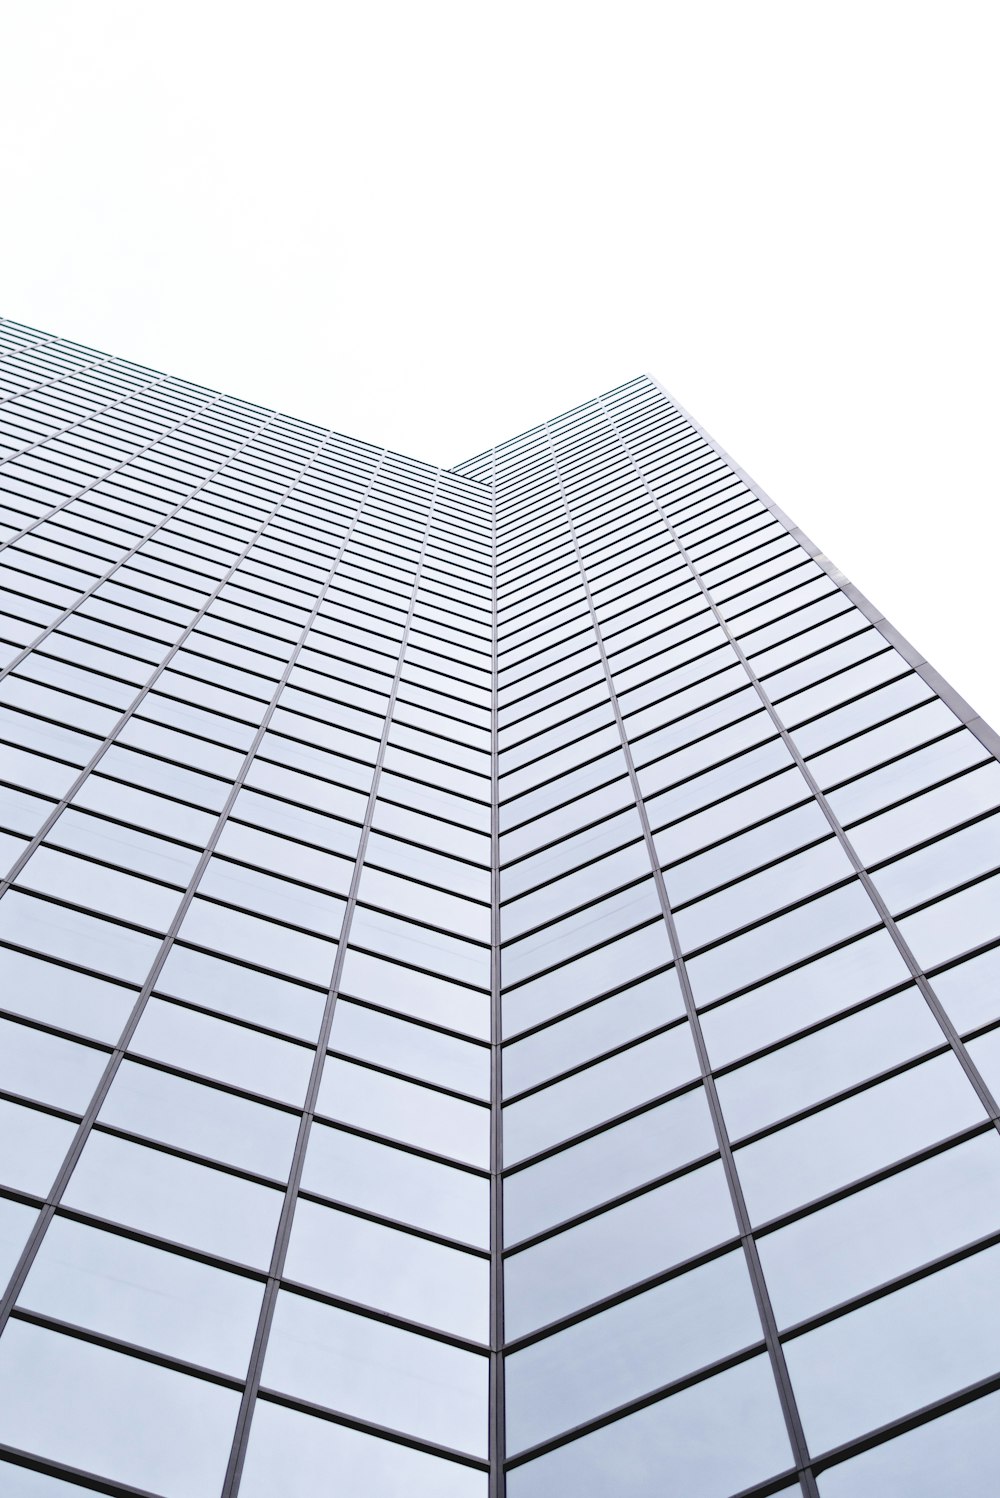 Fotografía de ángulo bajo de un edificio de vidrio de gran altura